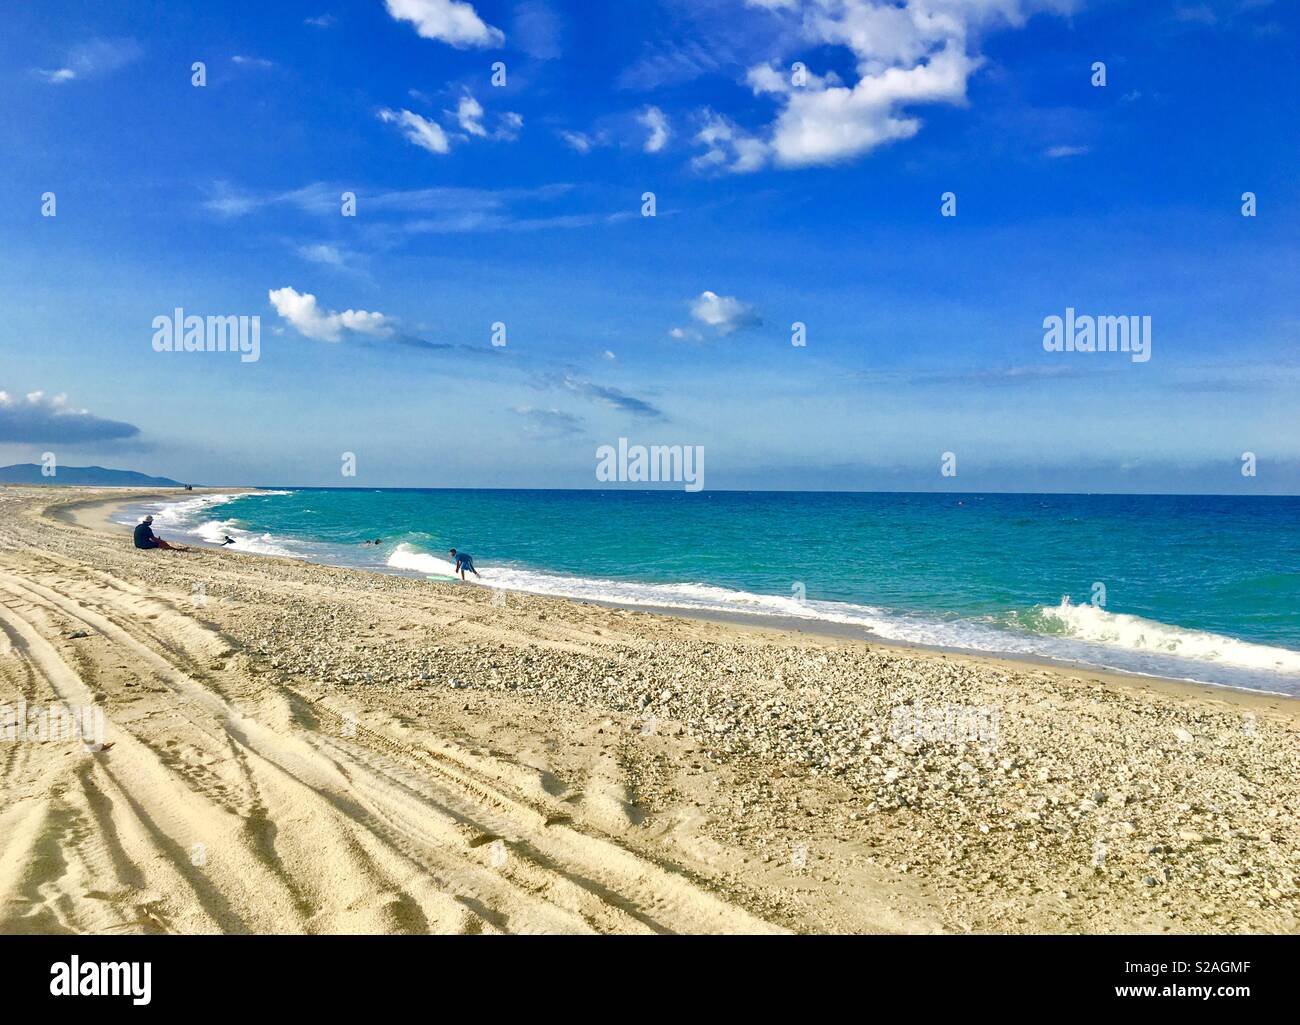 Spiaggia di sabbia bianca un luogo tranquillo in Sen Jose Messico è molto bello e tranquillo mare blu cielo blu del mare Foto Stock